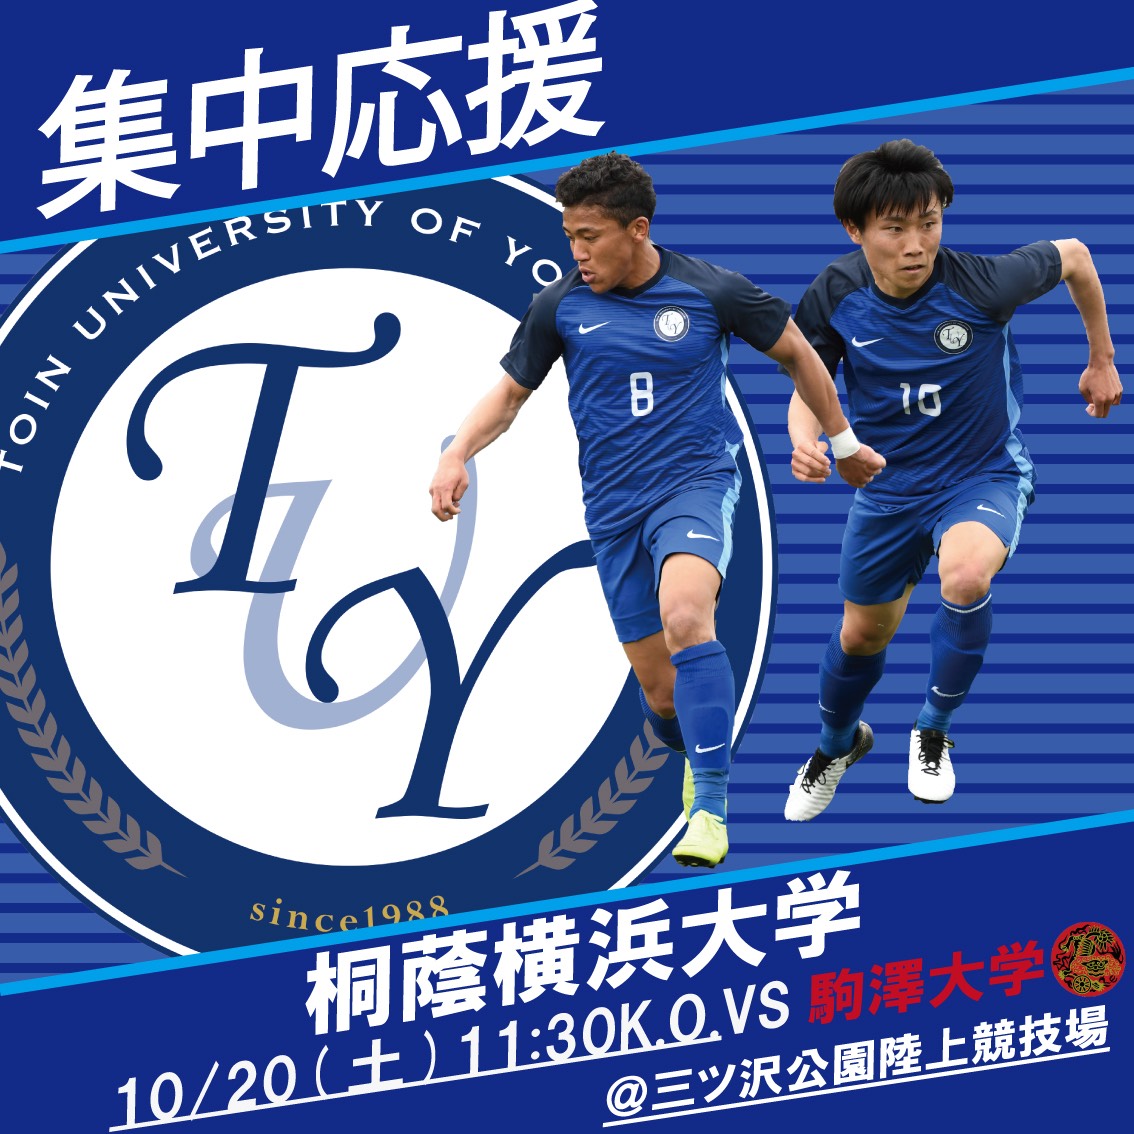 ニュース Jufa関東 関東大学サッカー連盟オフィシャルサイト